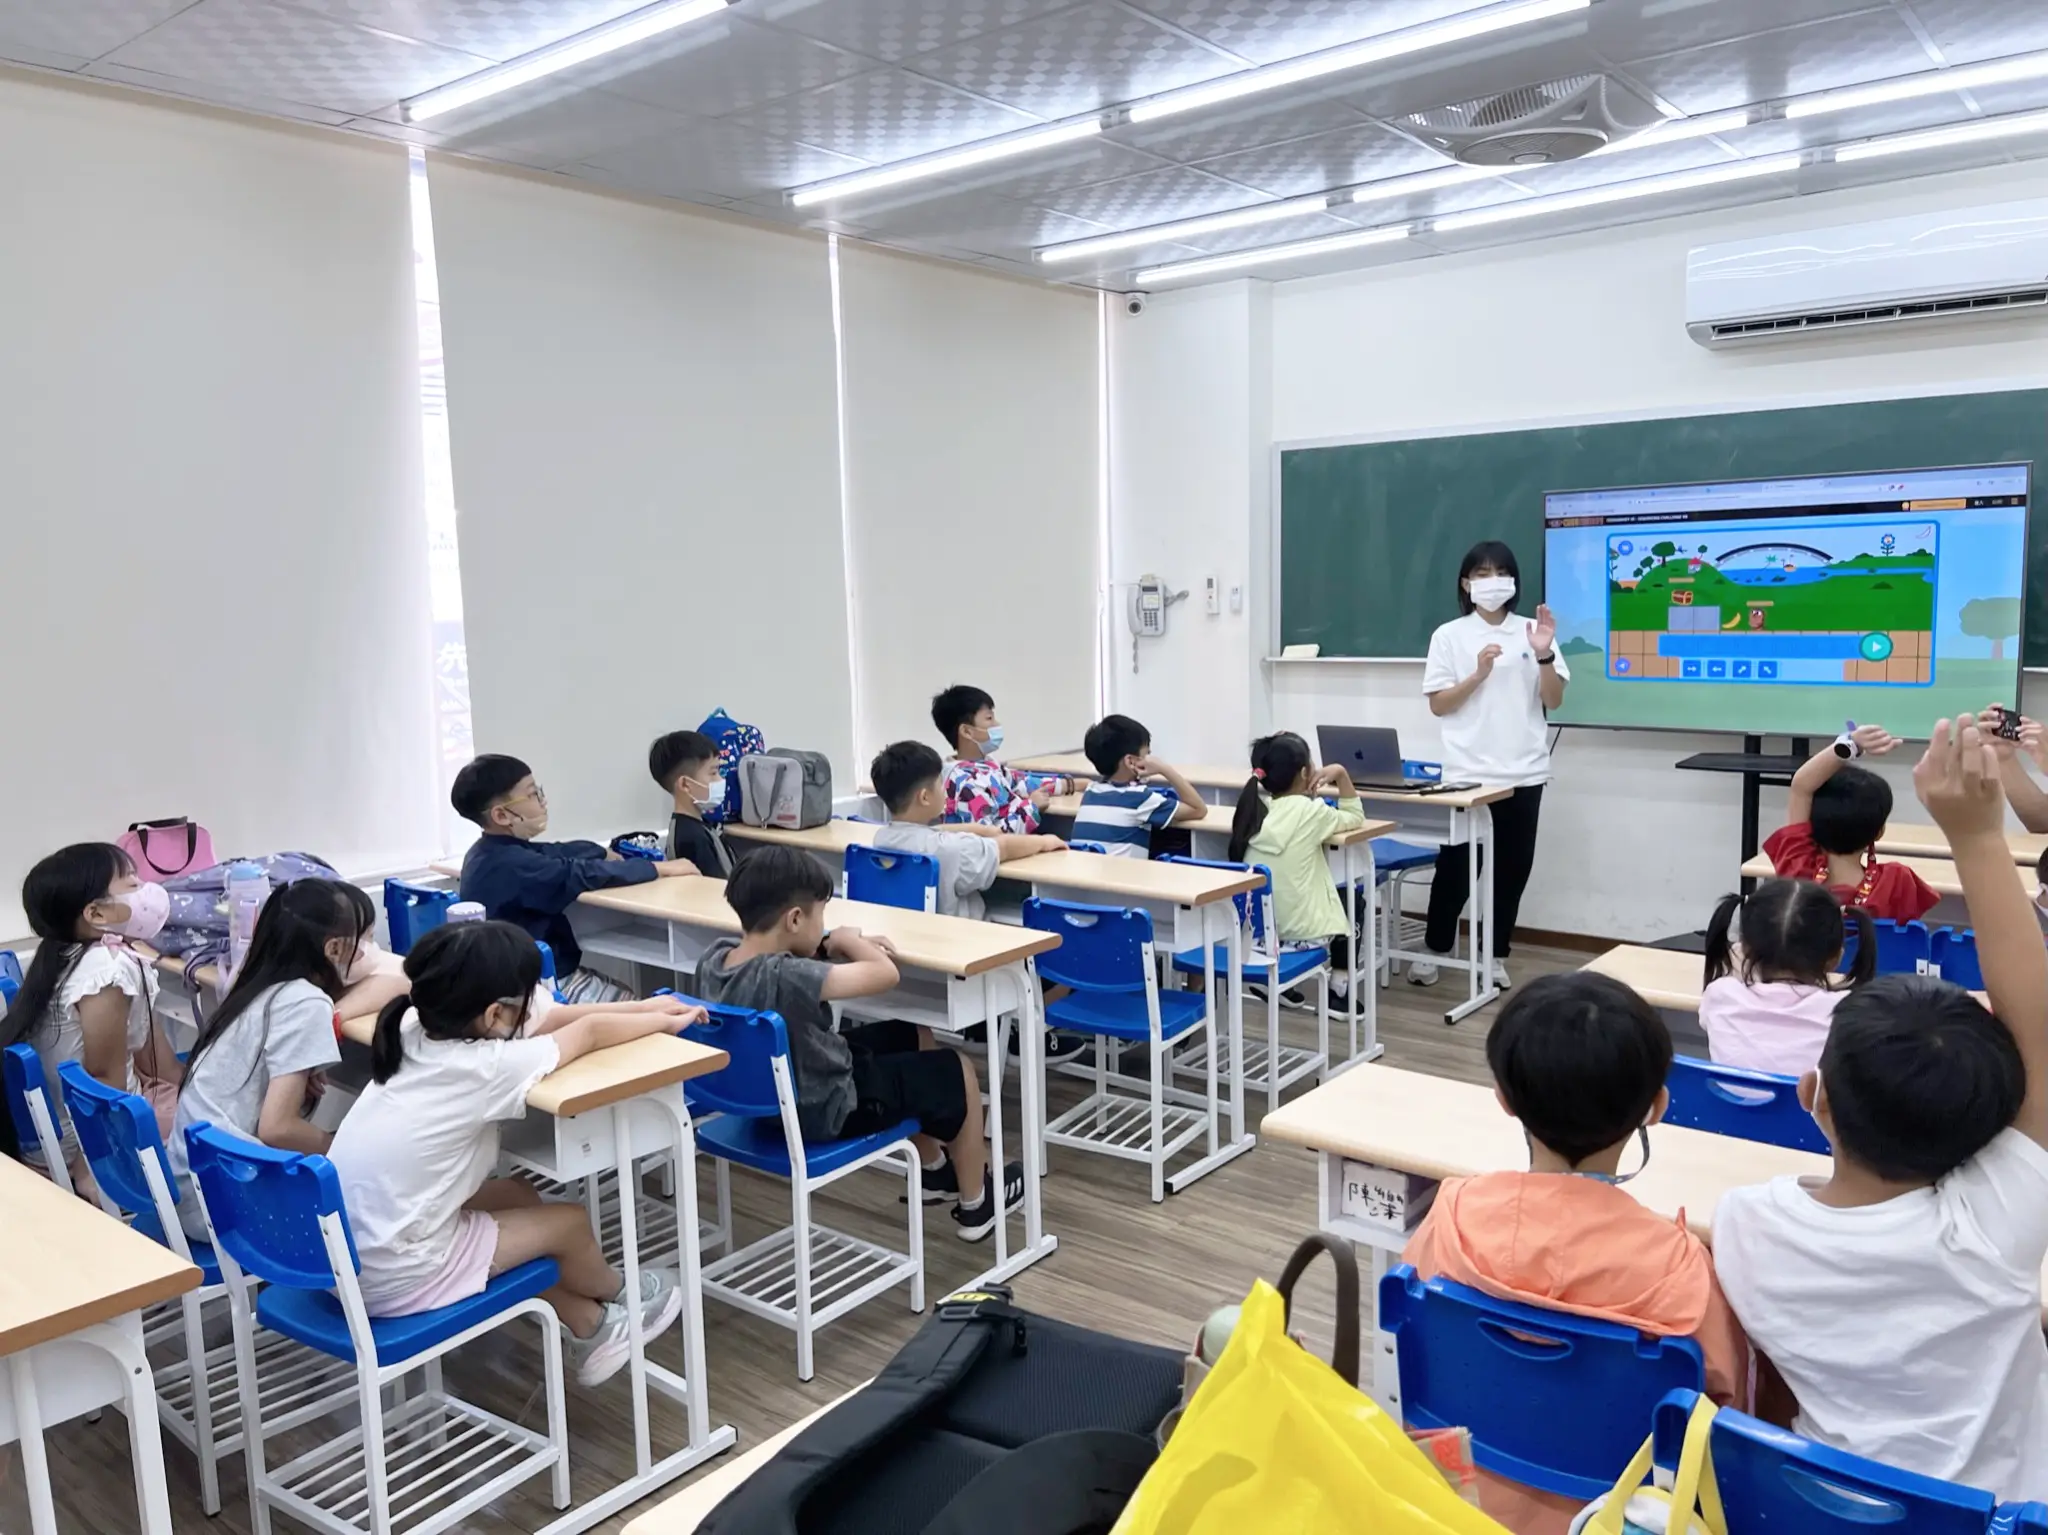 一位穿著白色Polo衫的女老師正在和同學們講解課程。